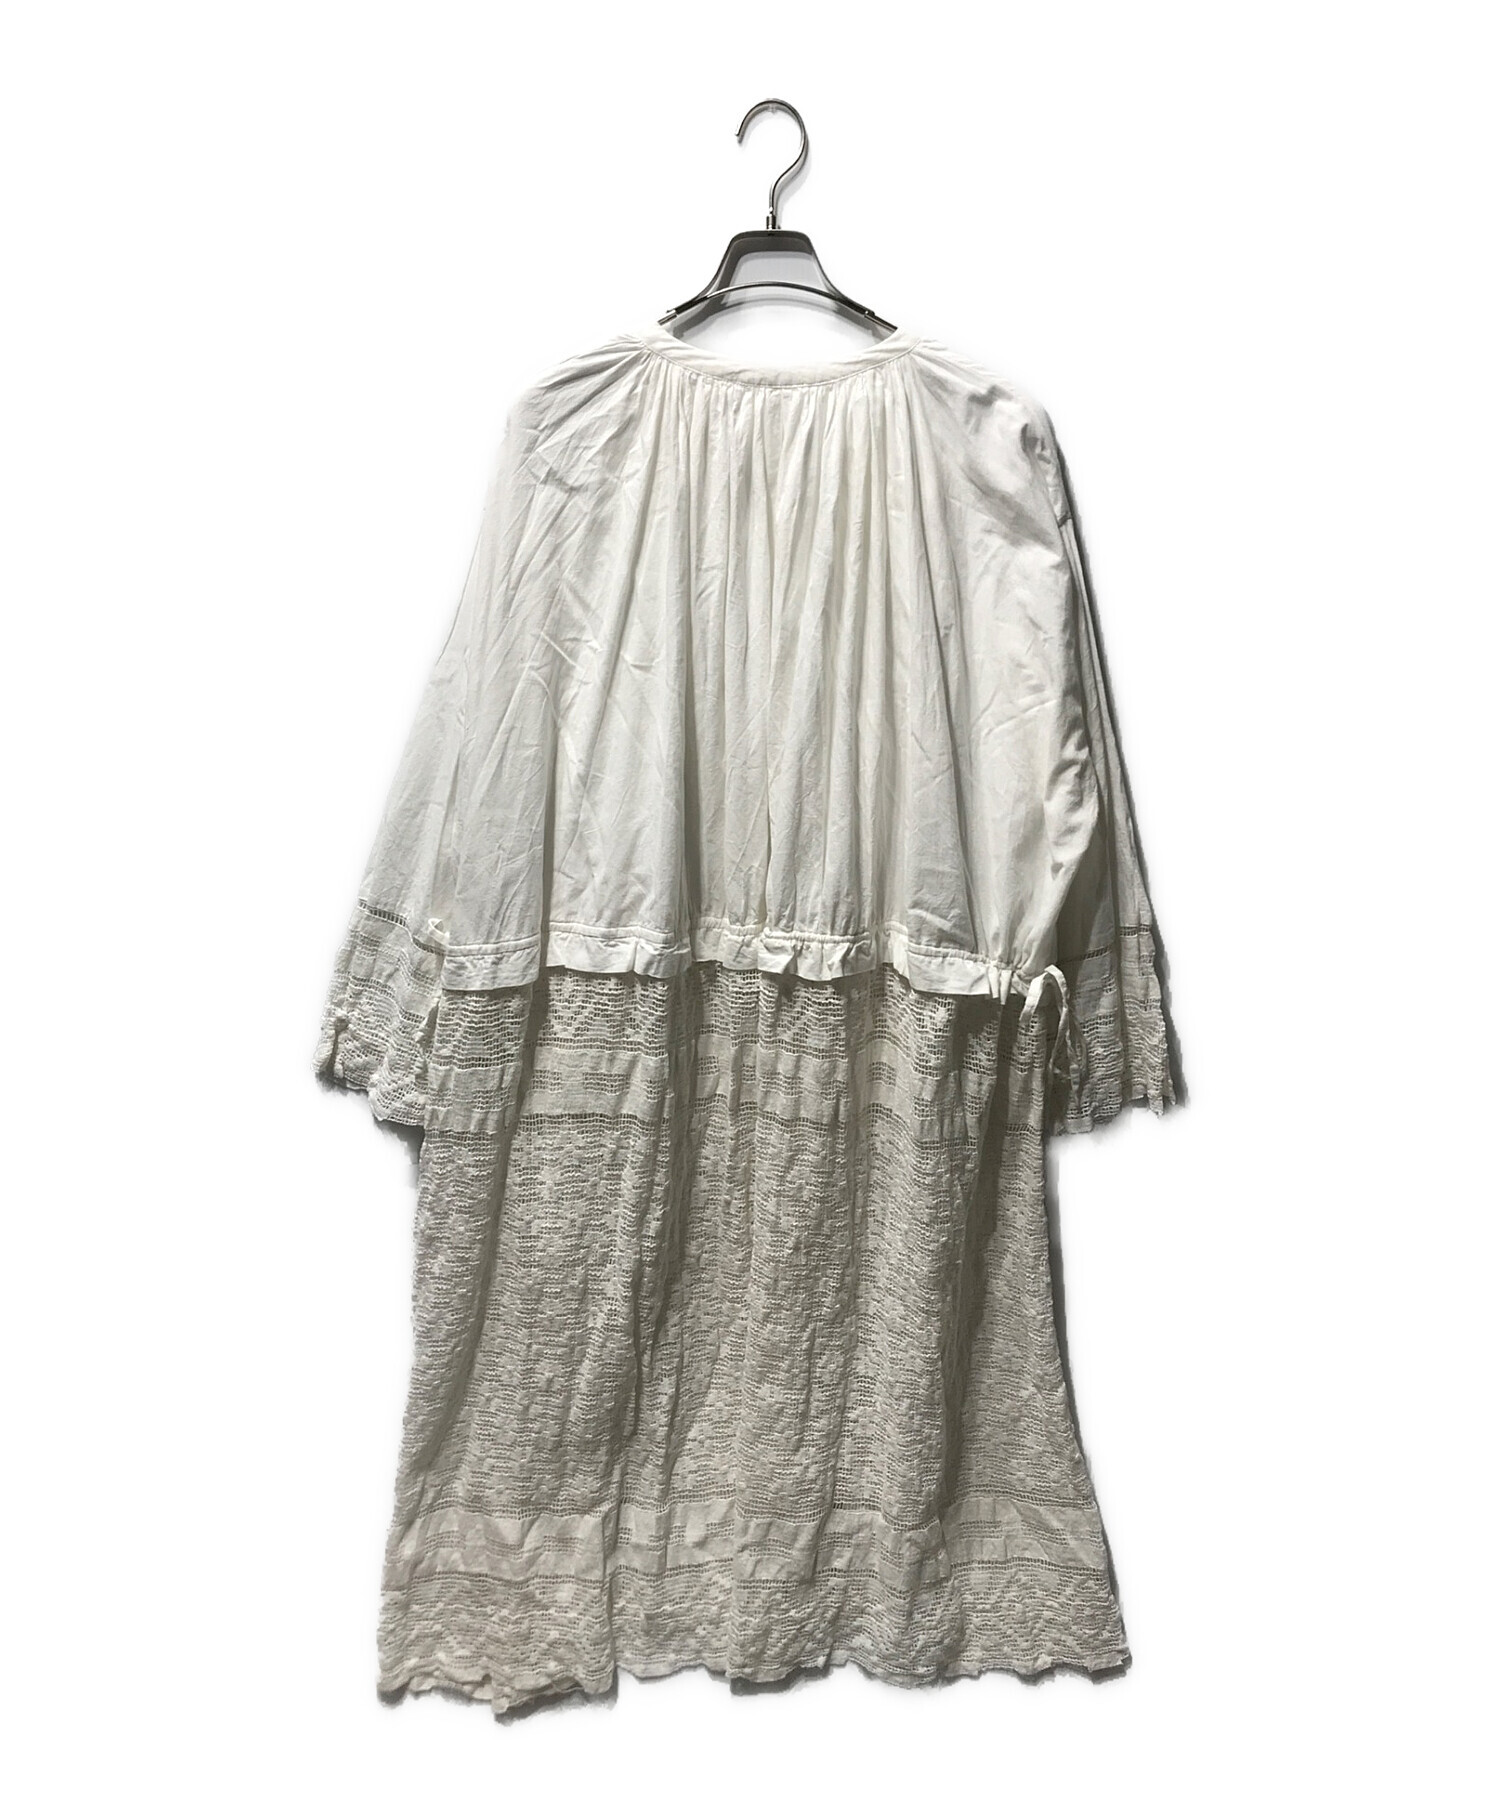 TODAYFUL (トゥデイフル) Church Lace Dress チャーチ レースドレス ホワイト サイズ:36